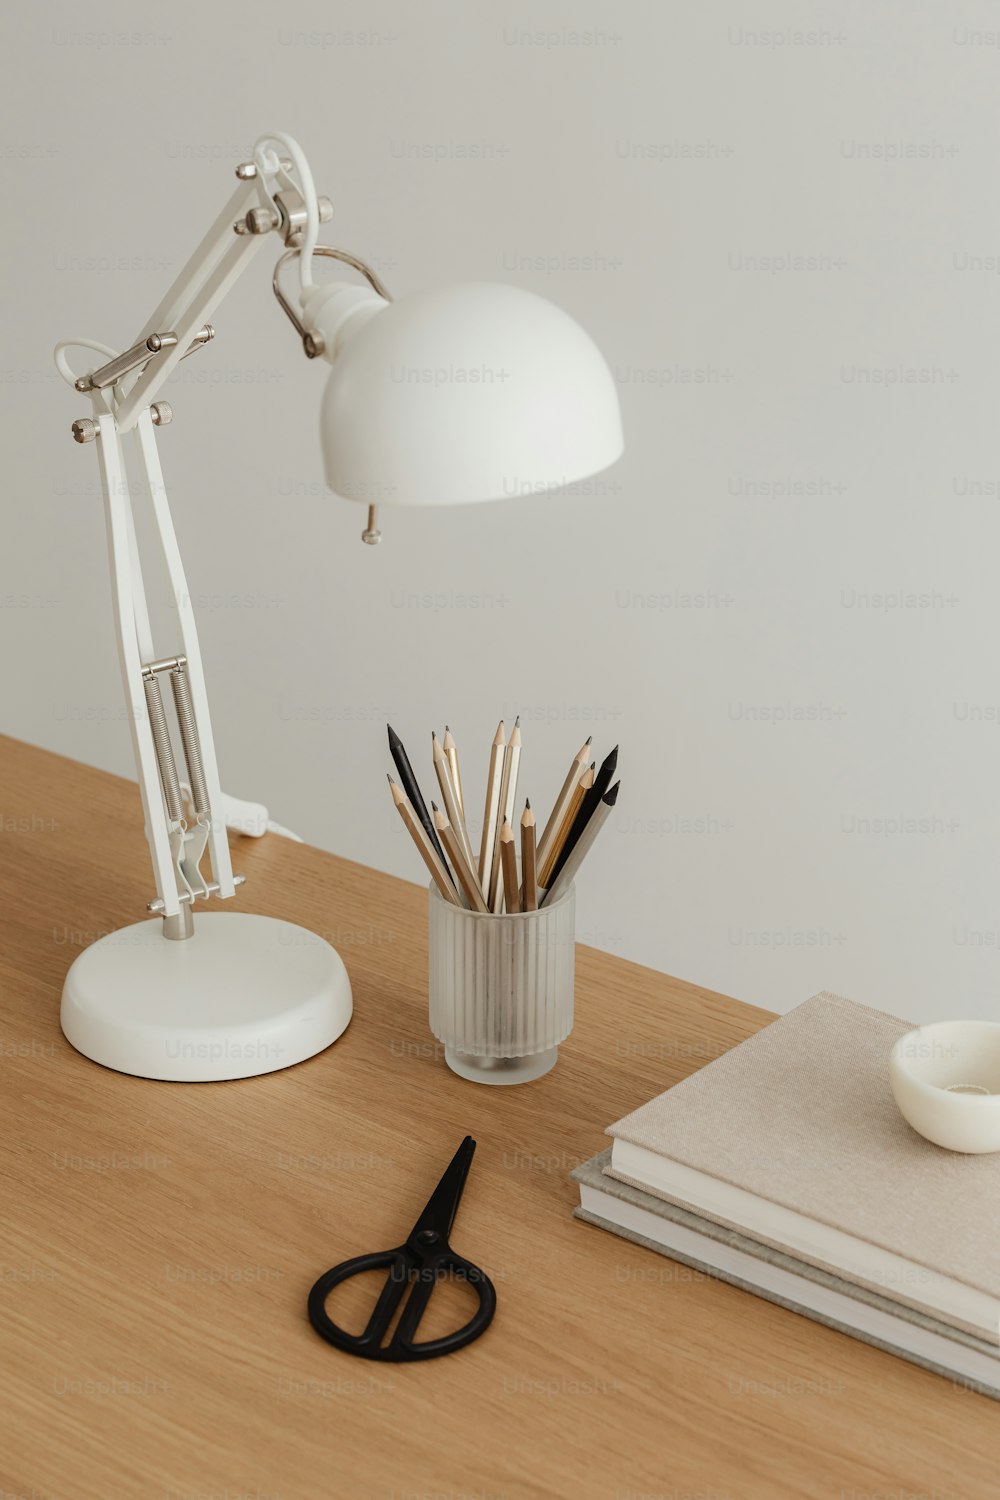 ein Schreibtisch mit einer Lampe, Bleistiften und einer Tasse darauf